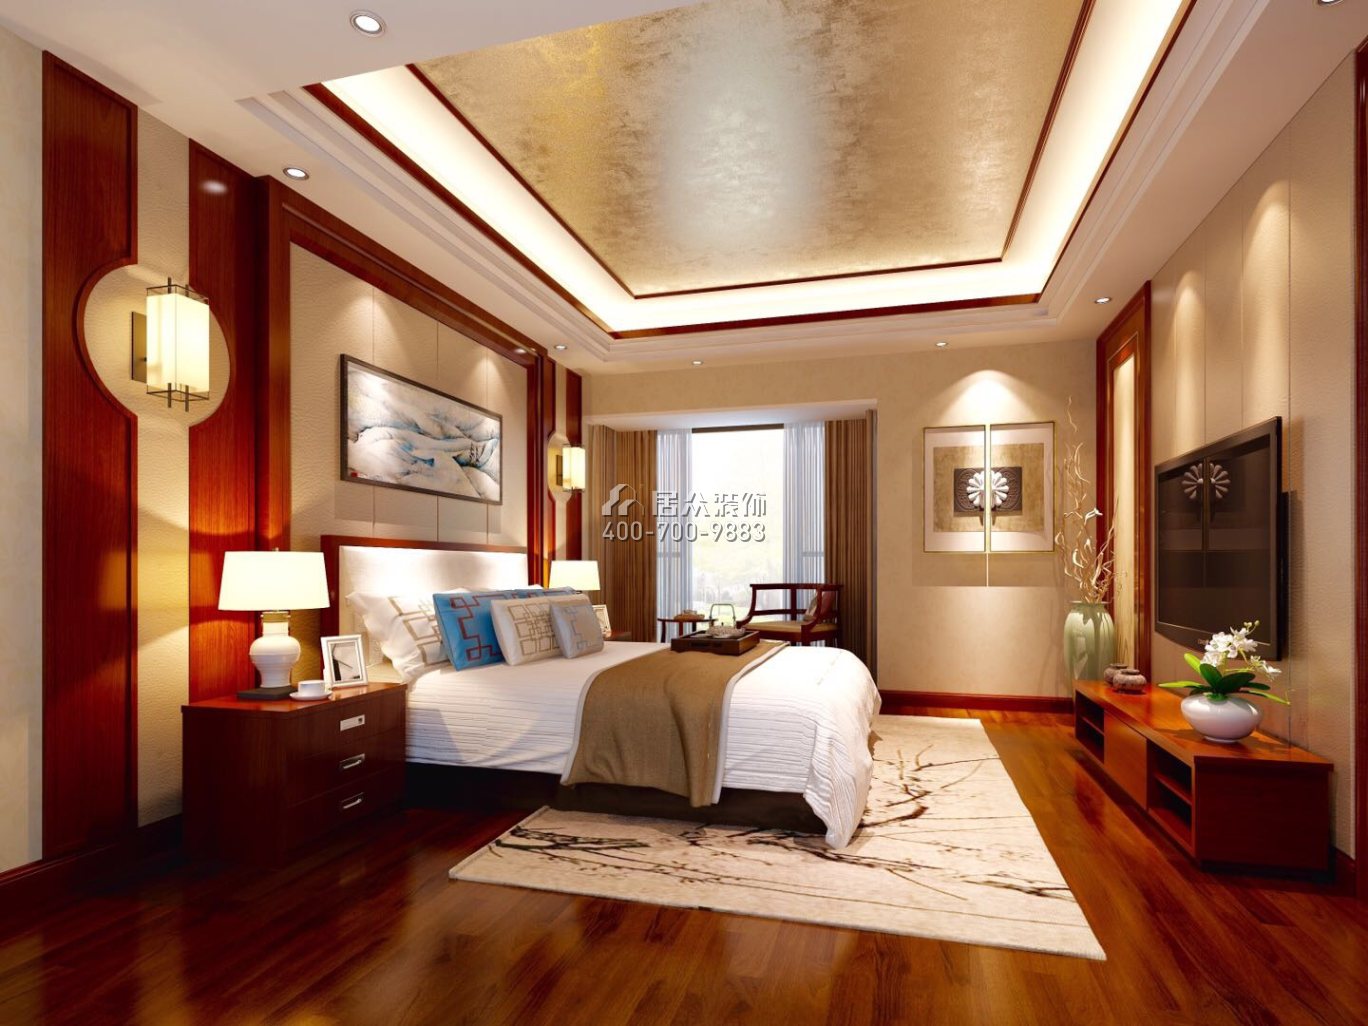 陶金山二期300平方米中式风格复式户型卧室装修效果图